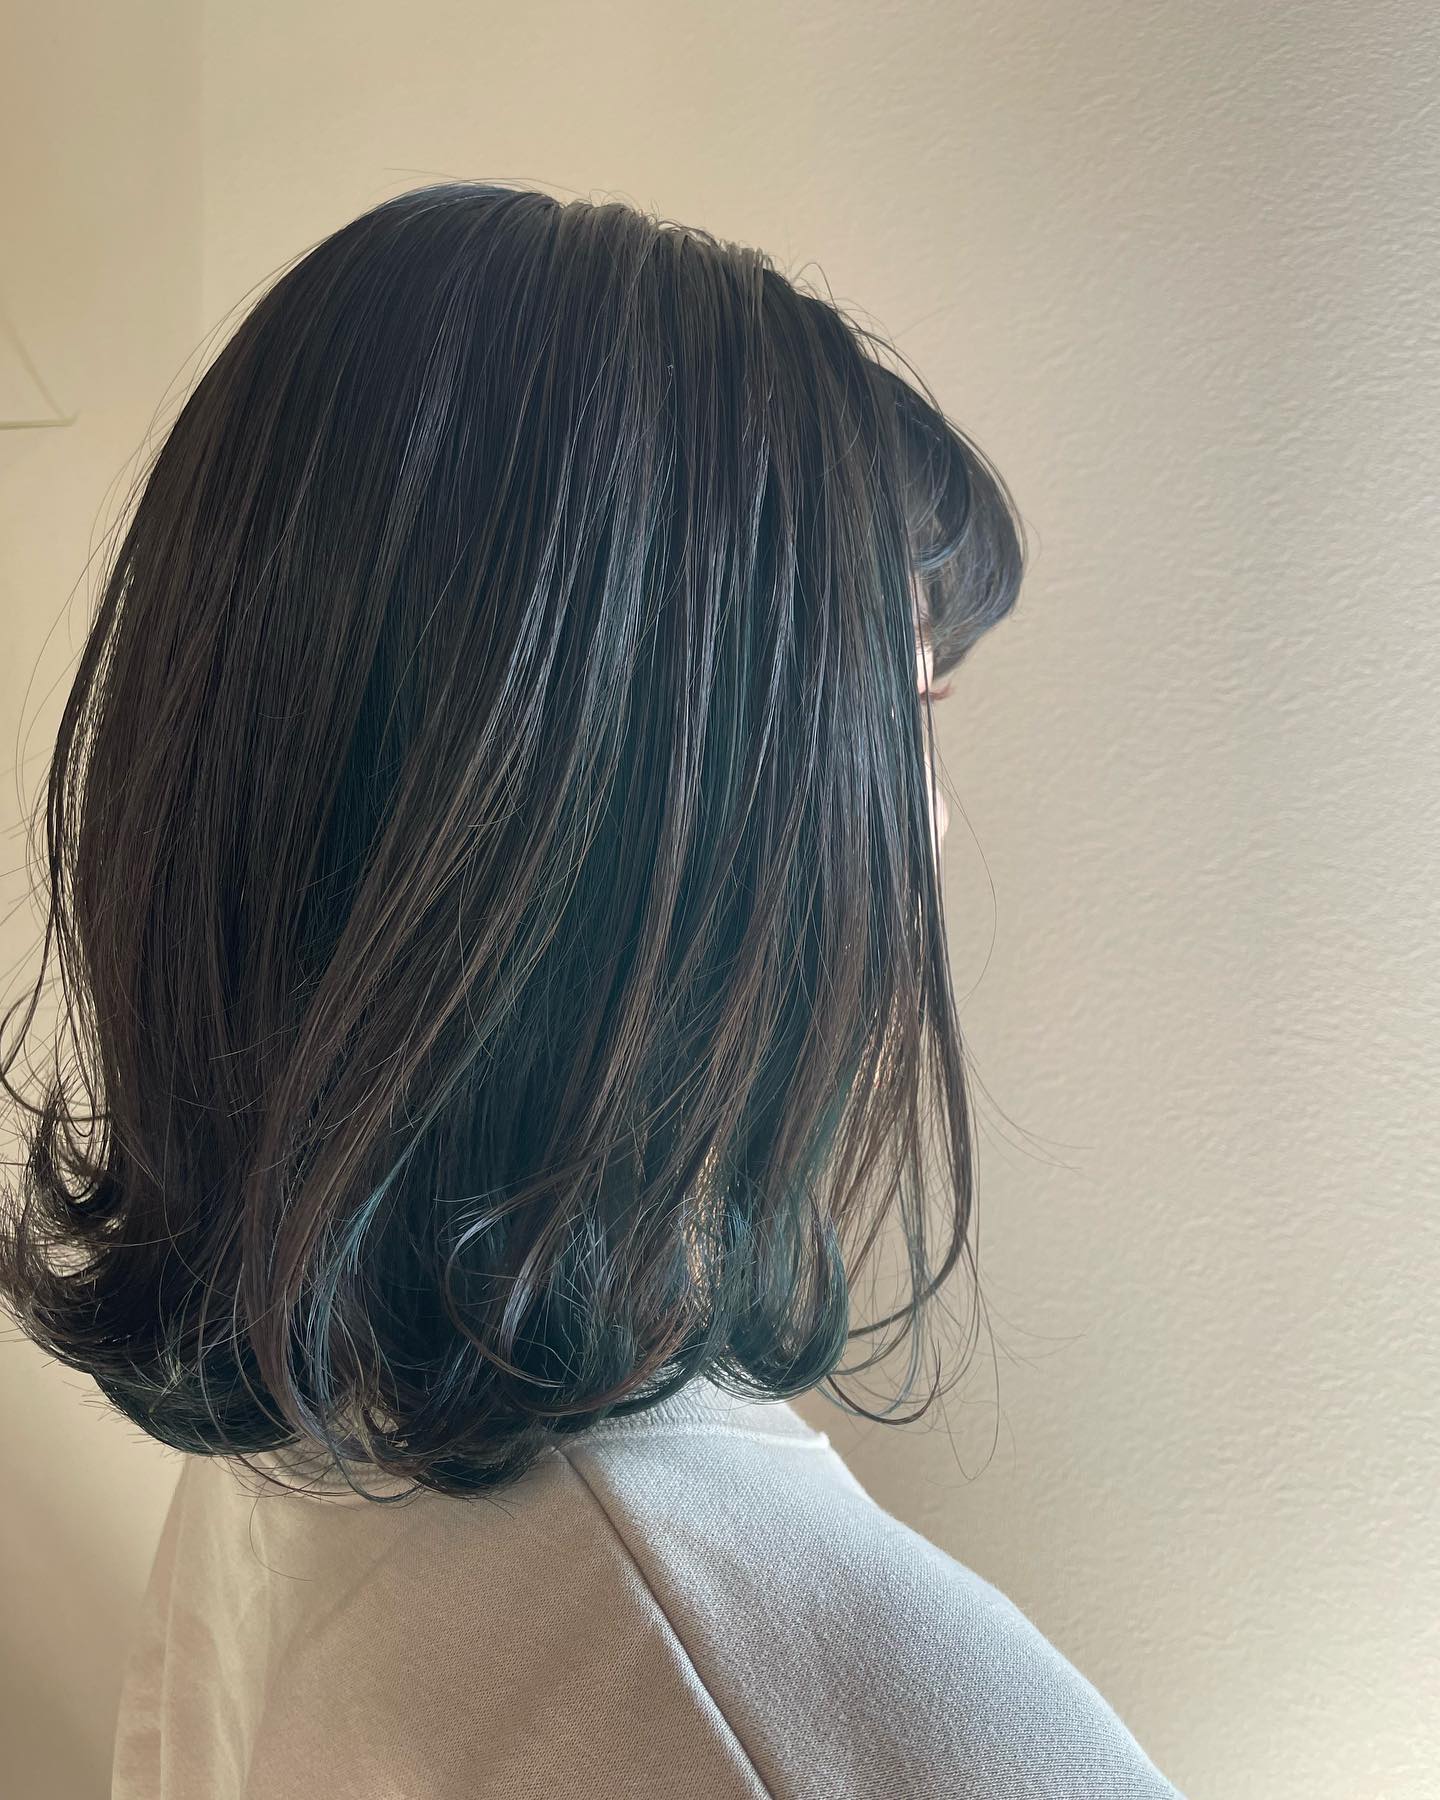 インナーにブルーグリーンを入れたてもキレイだけど落ちてくる感じも楽しい🤩#totti #hair #color #perm #cut #hairstyle #haircolor #hairarrange #stylist #care #carelist #aujua #イルミナカラー #headspa #treatment #美容院